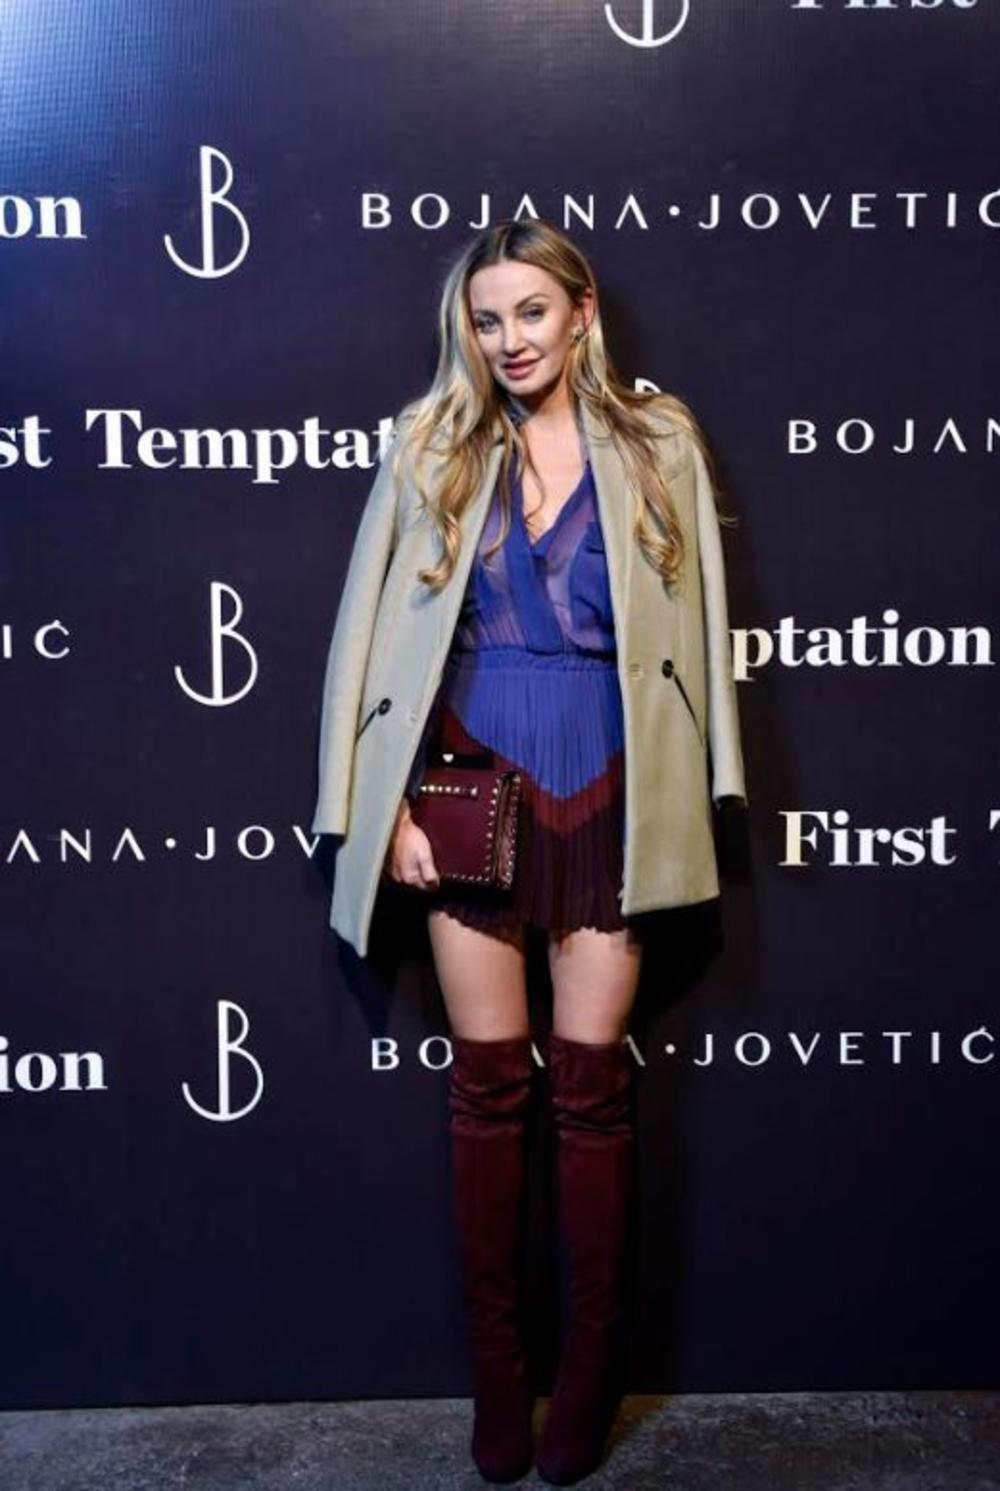 Bojana Jovetić je novo ime na domaćoj modnoj sceni, a svojom prvom revijom i kolekcijom sinoć je oduševila sve prisutne u klubu Drugstore, gde je održana ova revija